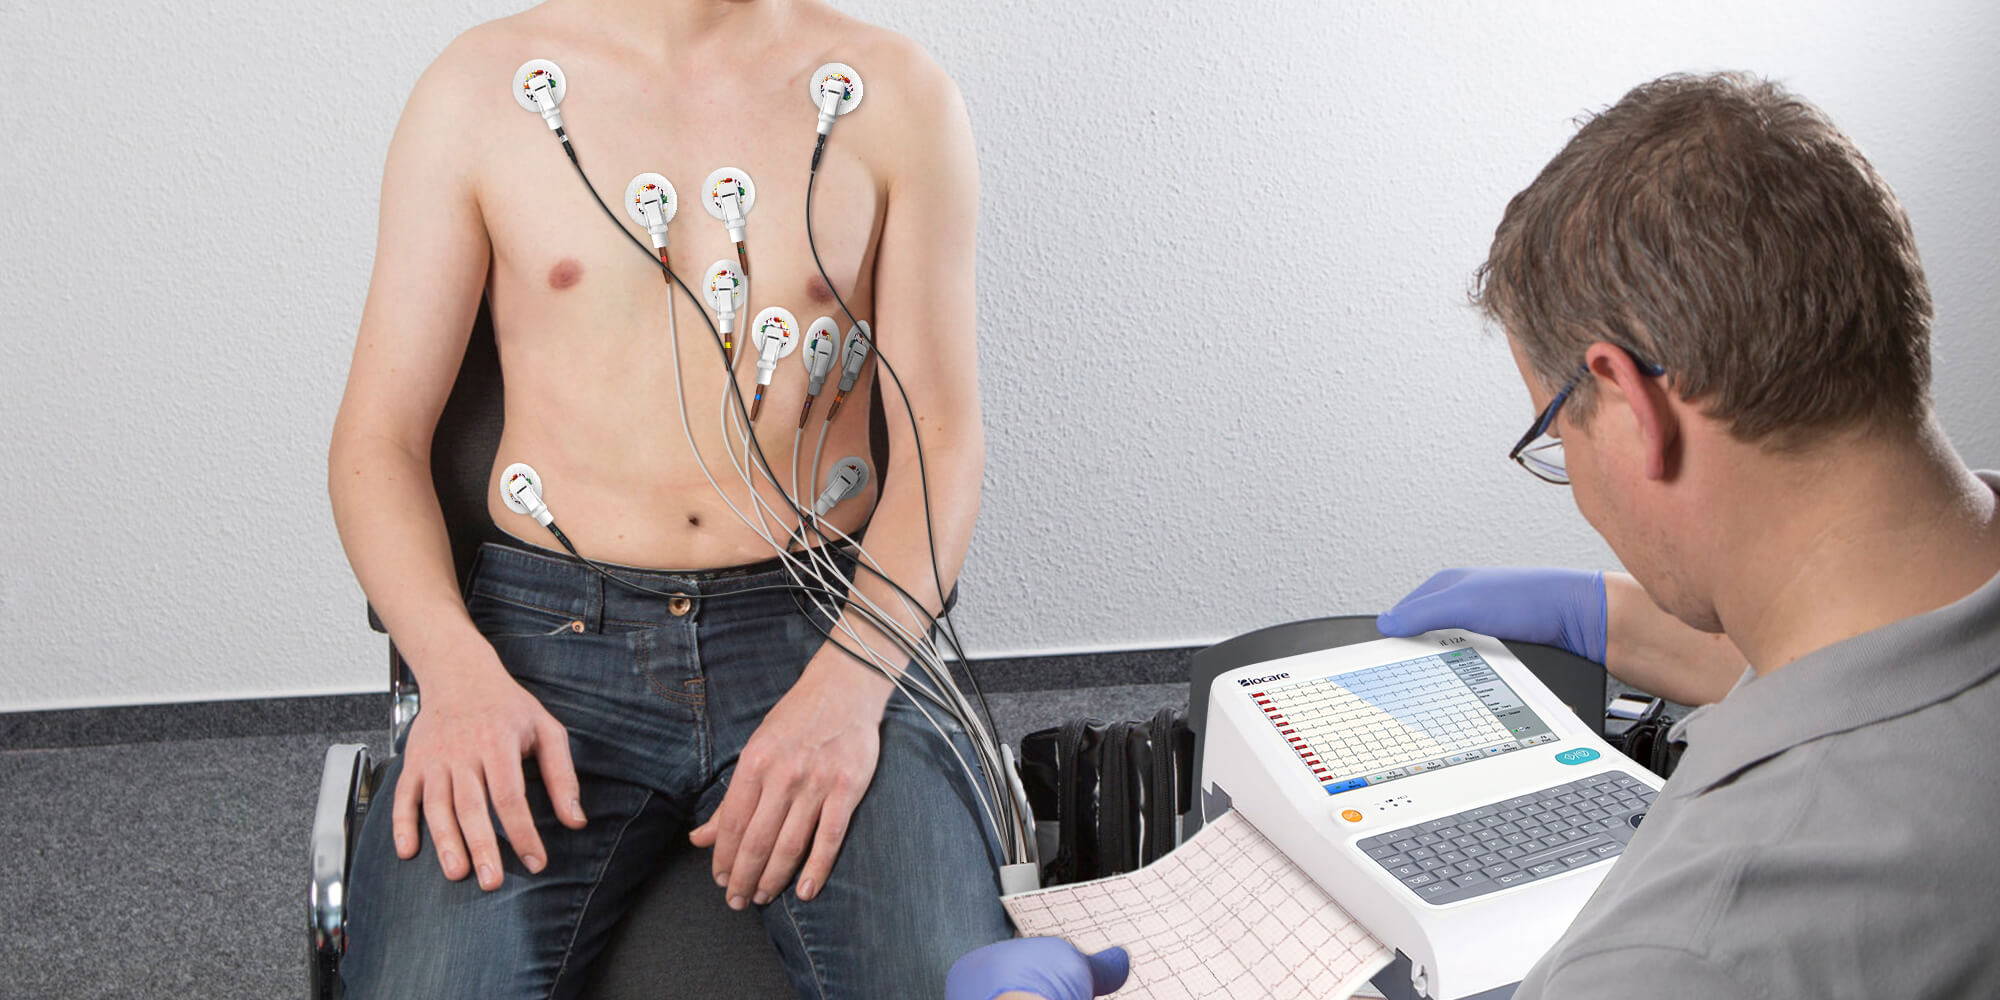 استخدم جهاز تخطيط القلب الرقمي Biocare iE12A ذو 12 قناة و12 سلكًا لإجراء اختبار تخطيط القلب لمريضك